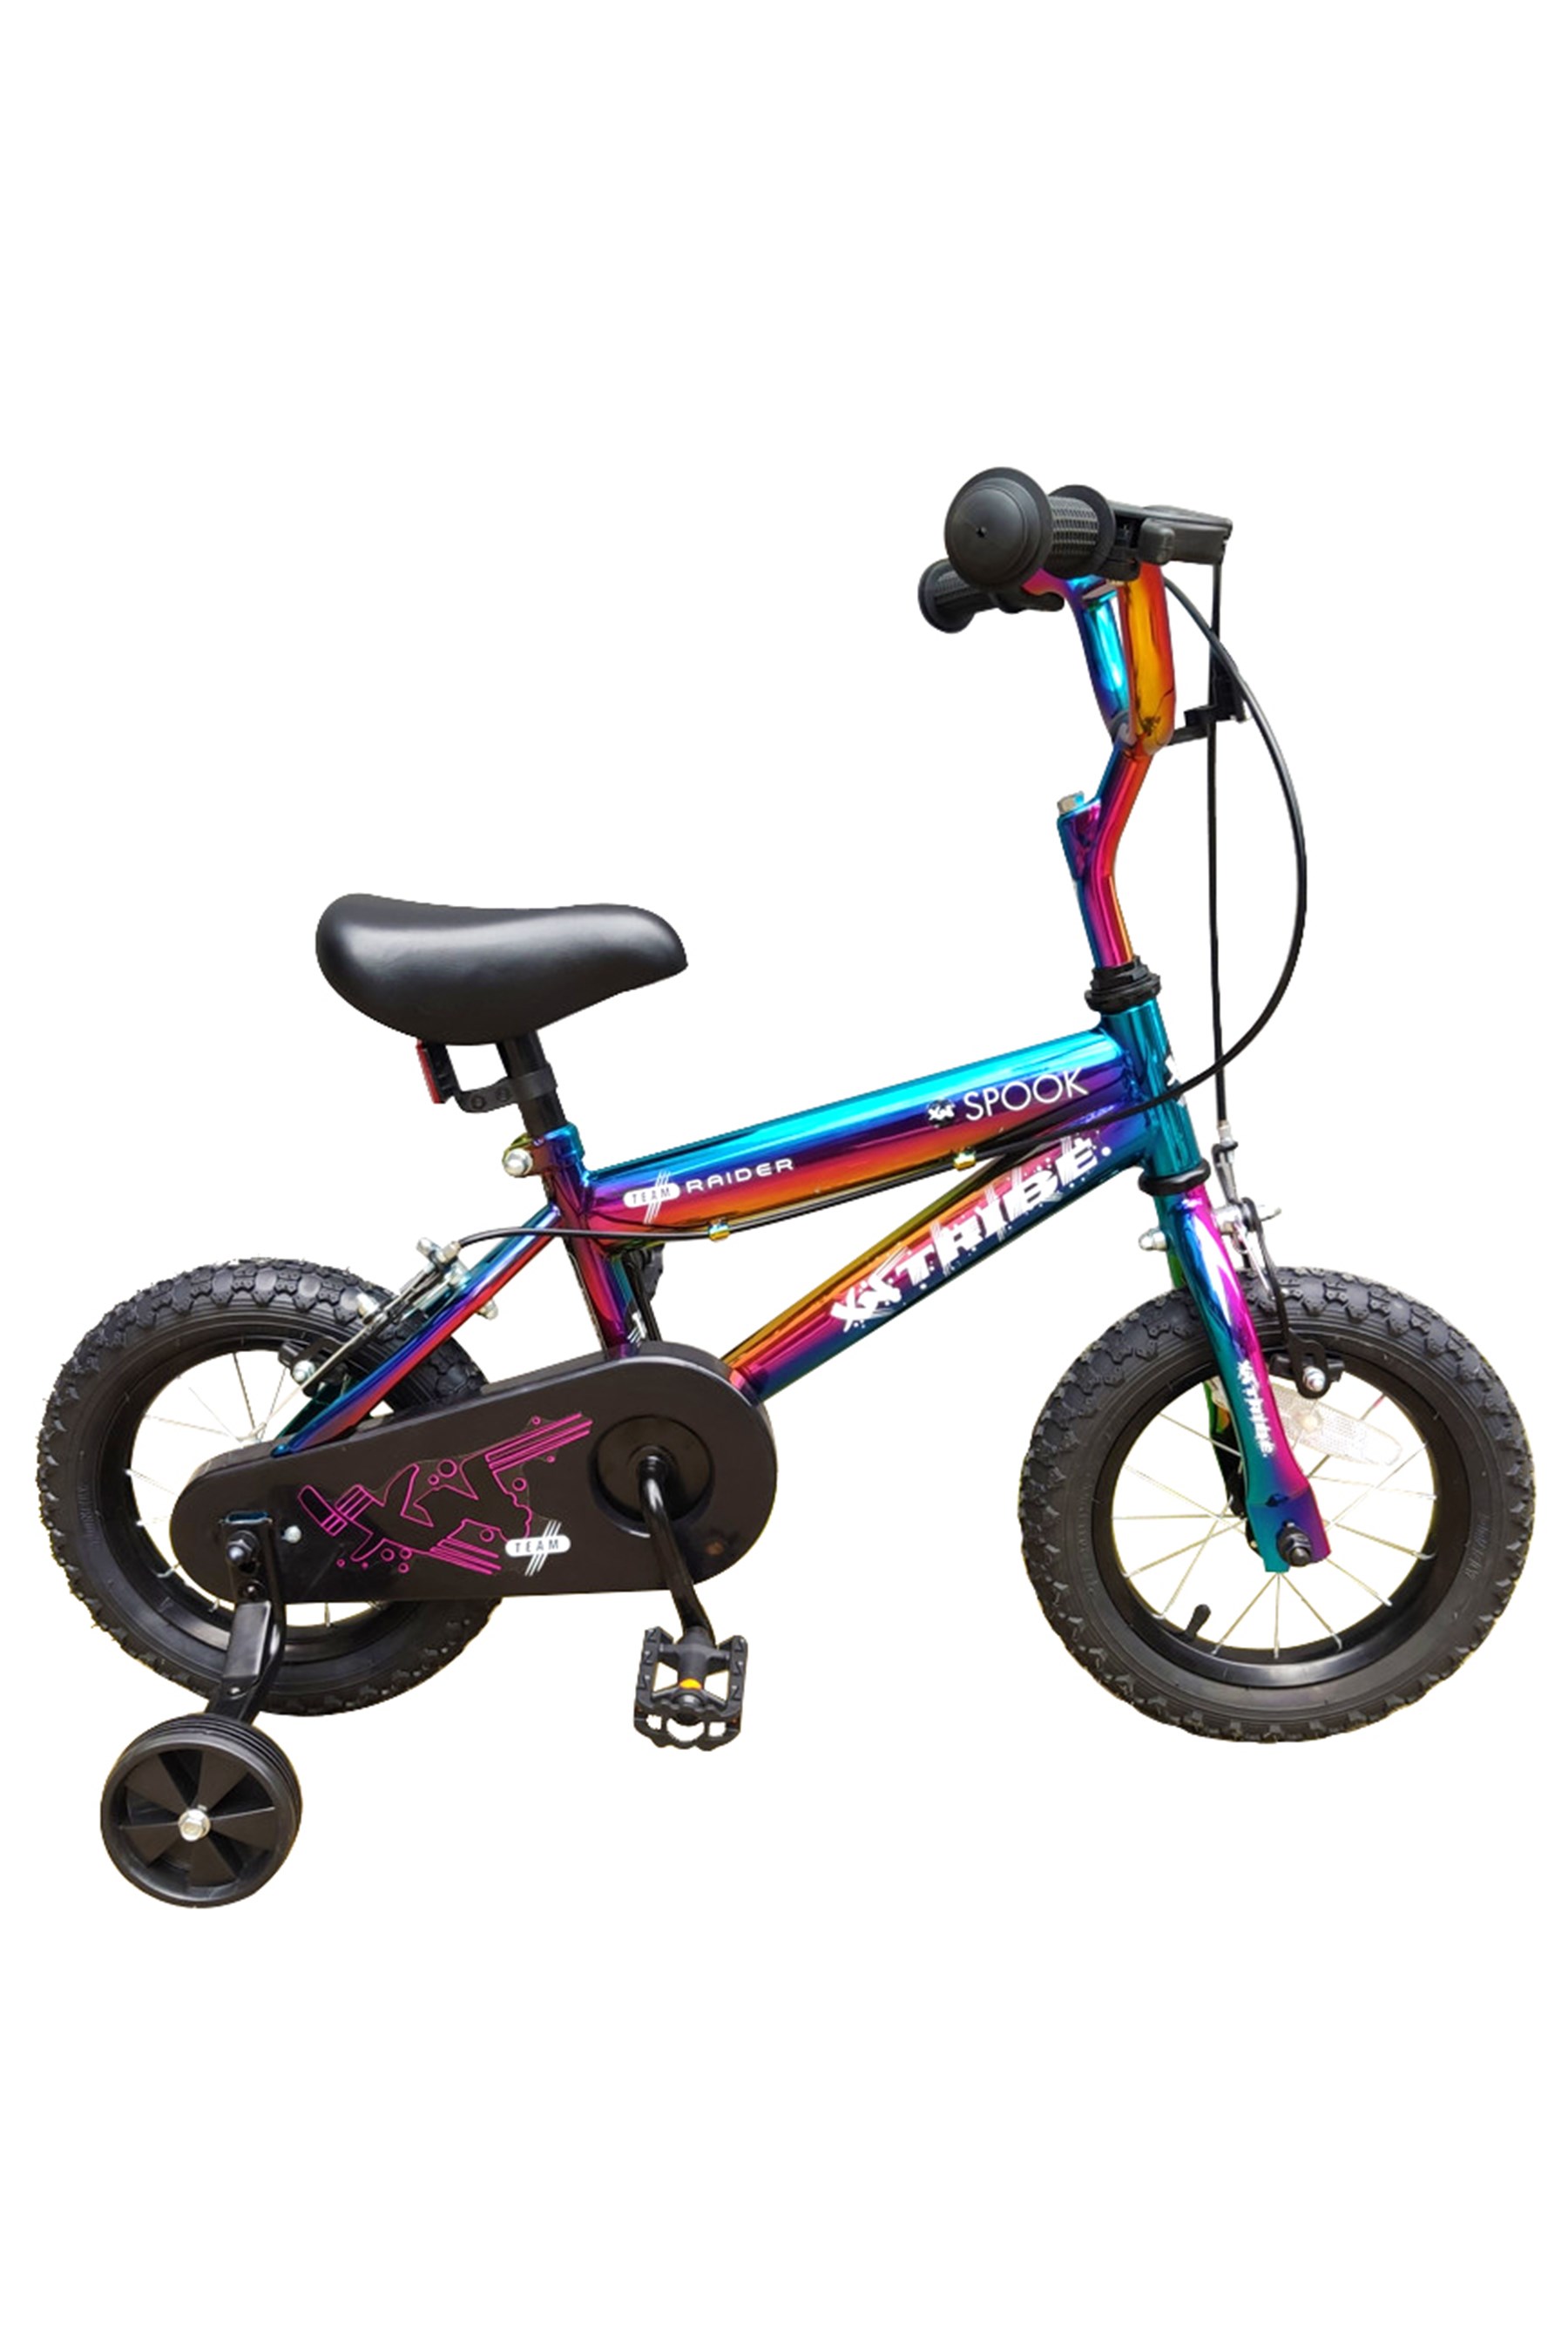 XN Tribe Spook Kids 12" Pavement Bike -